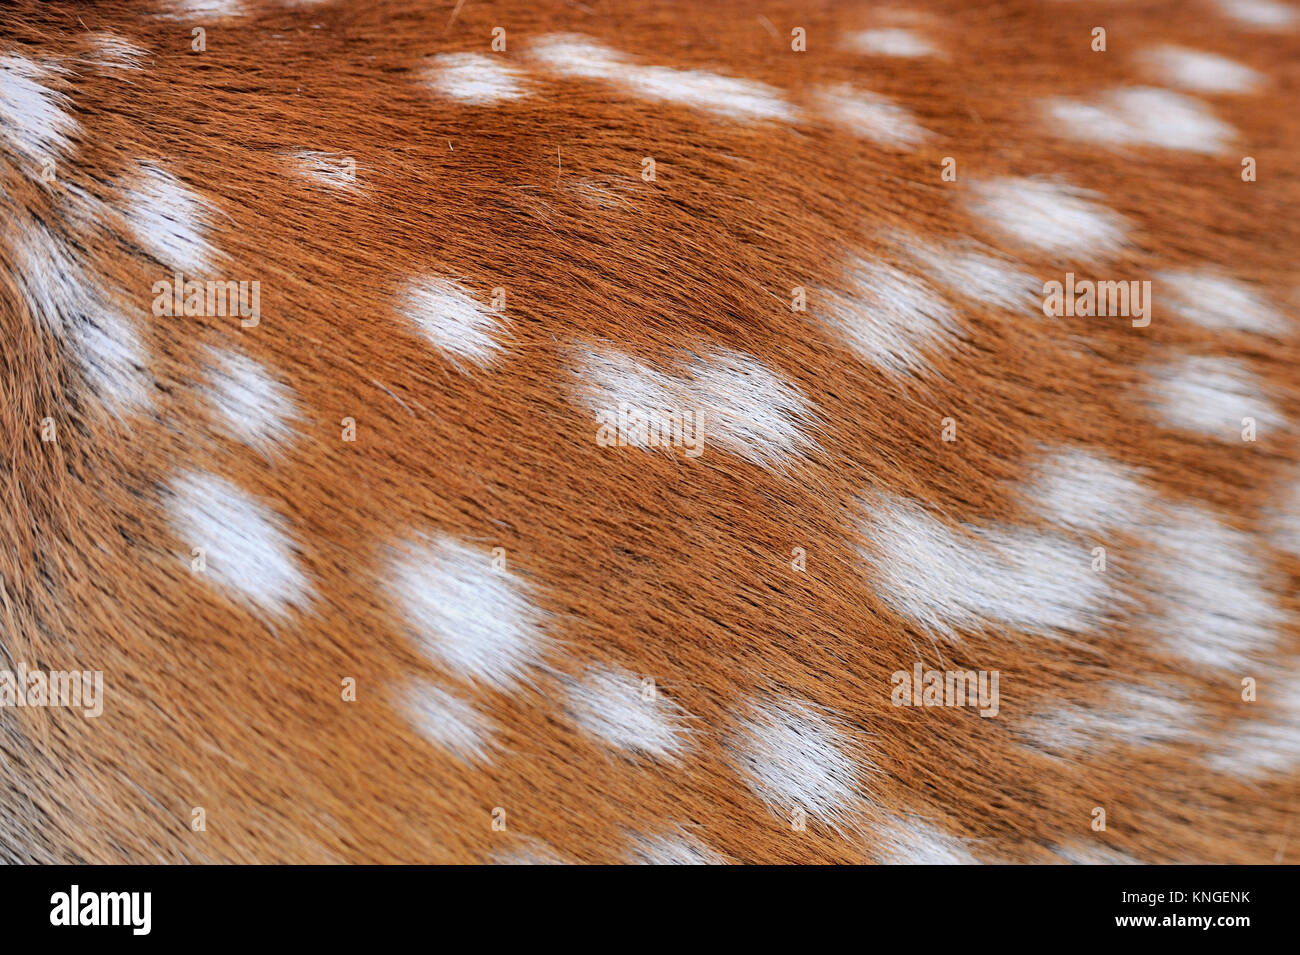 La texture de l'axe réel fourrure cerf sika Banque D'Images